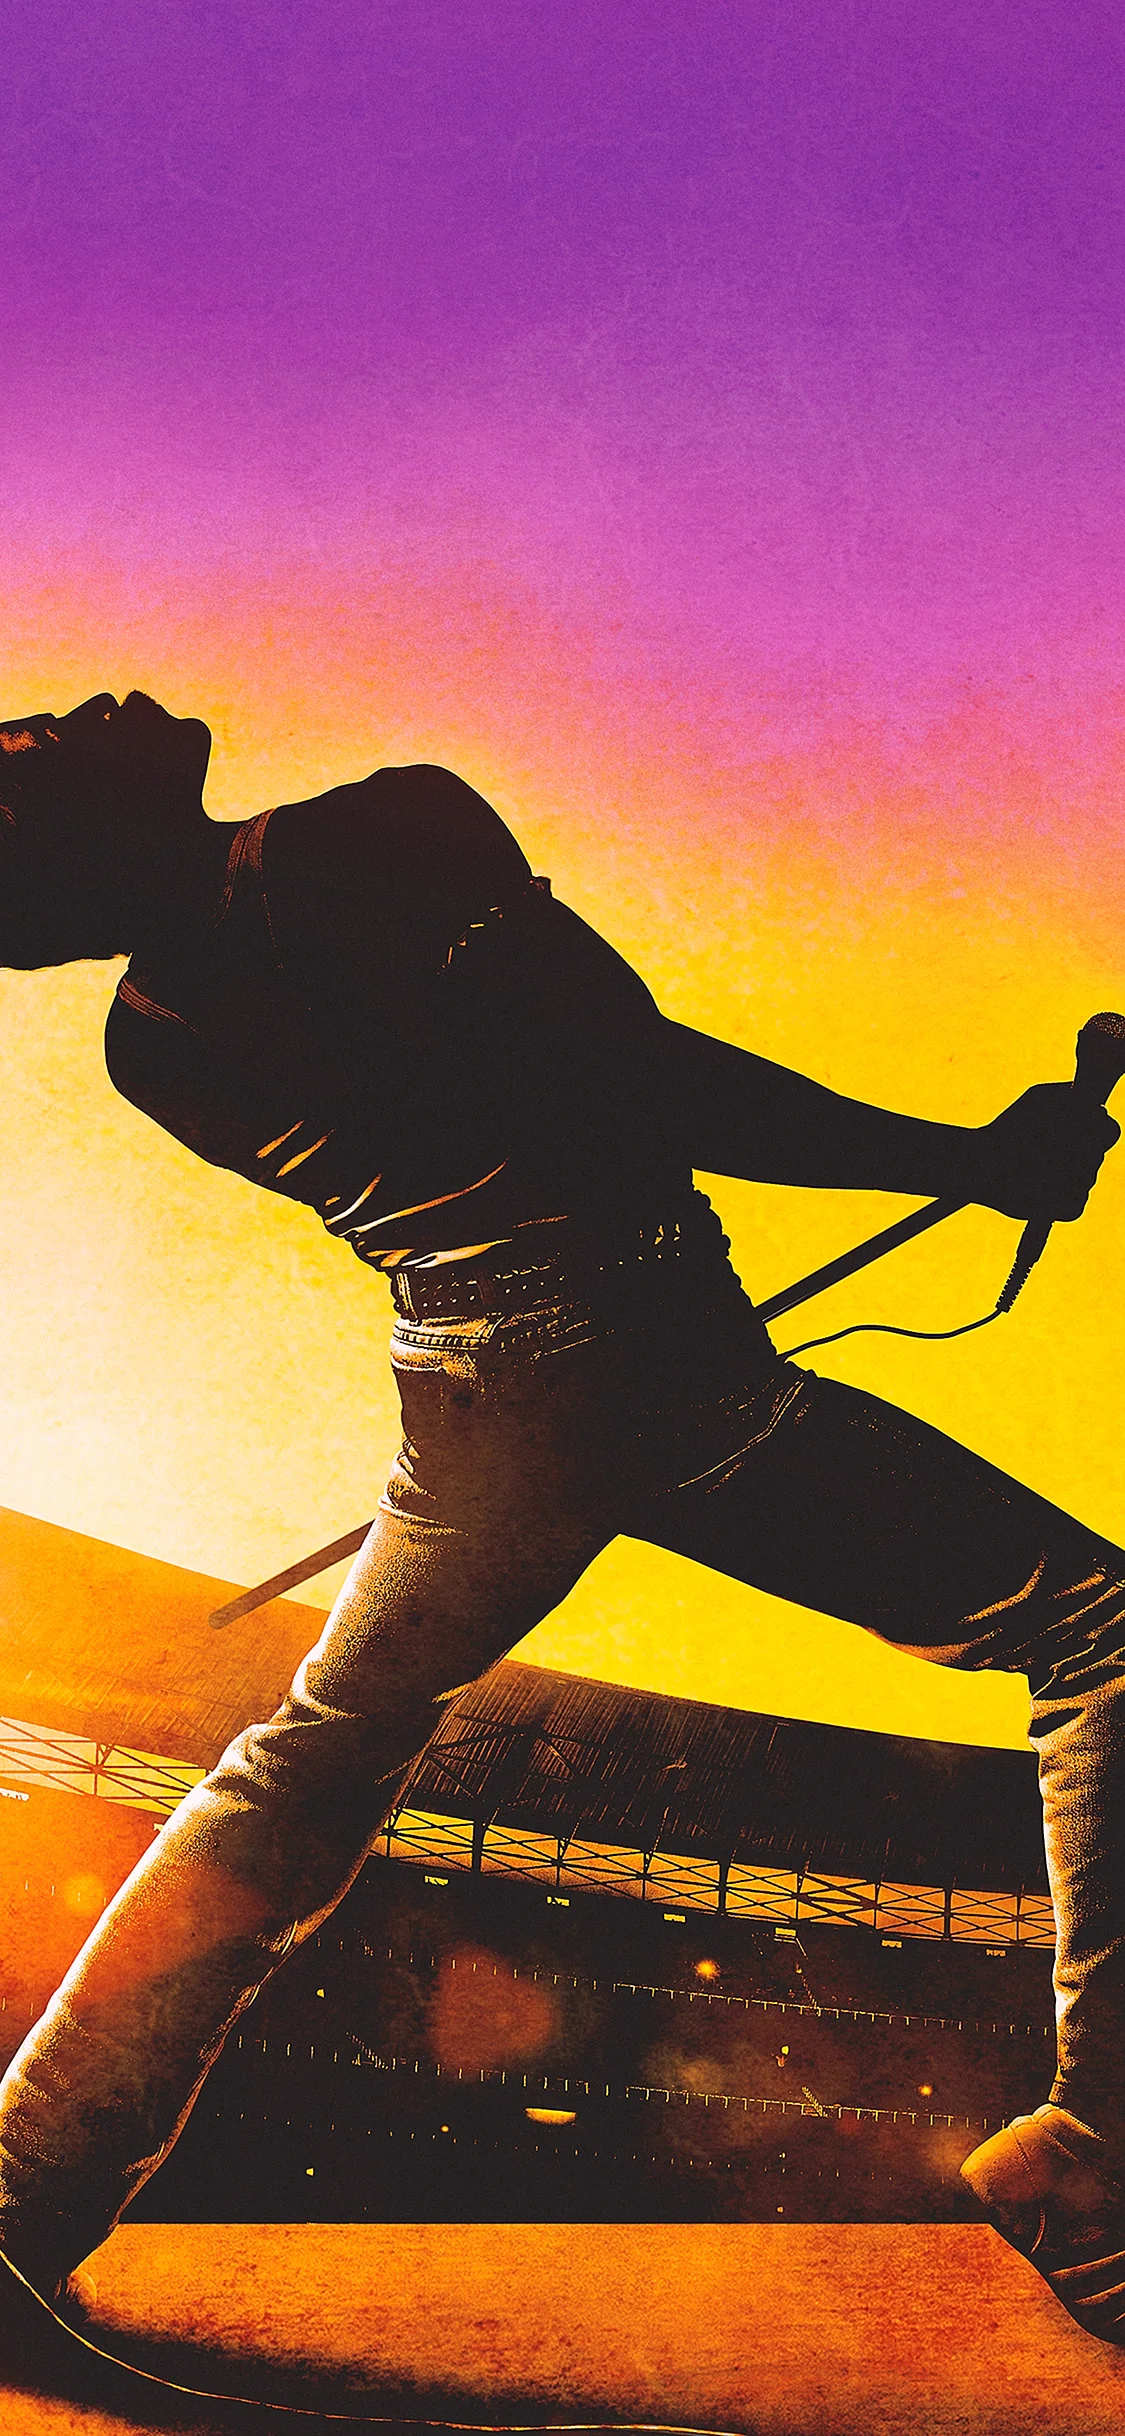 Bohemian Rhapsody Wallpaper for iPhone 11 Pro